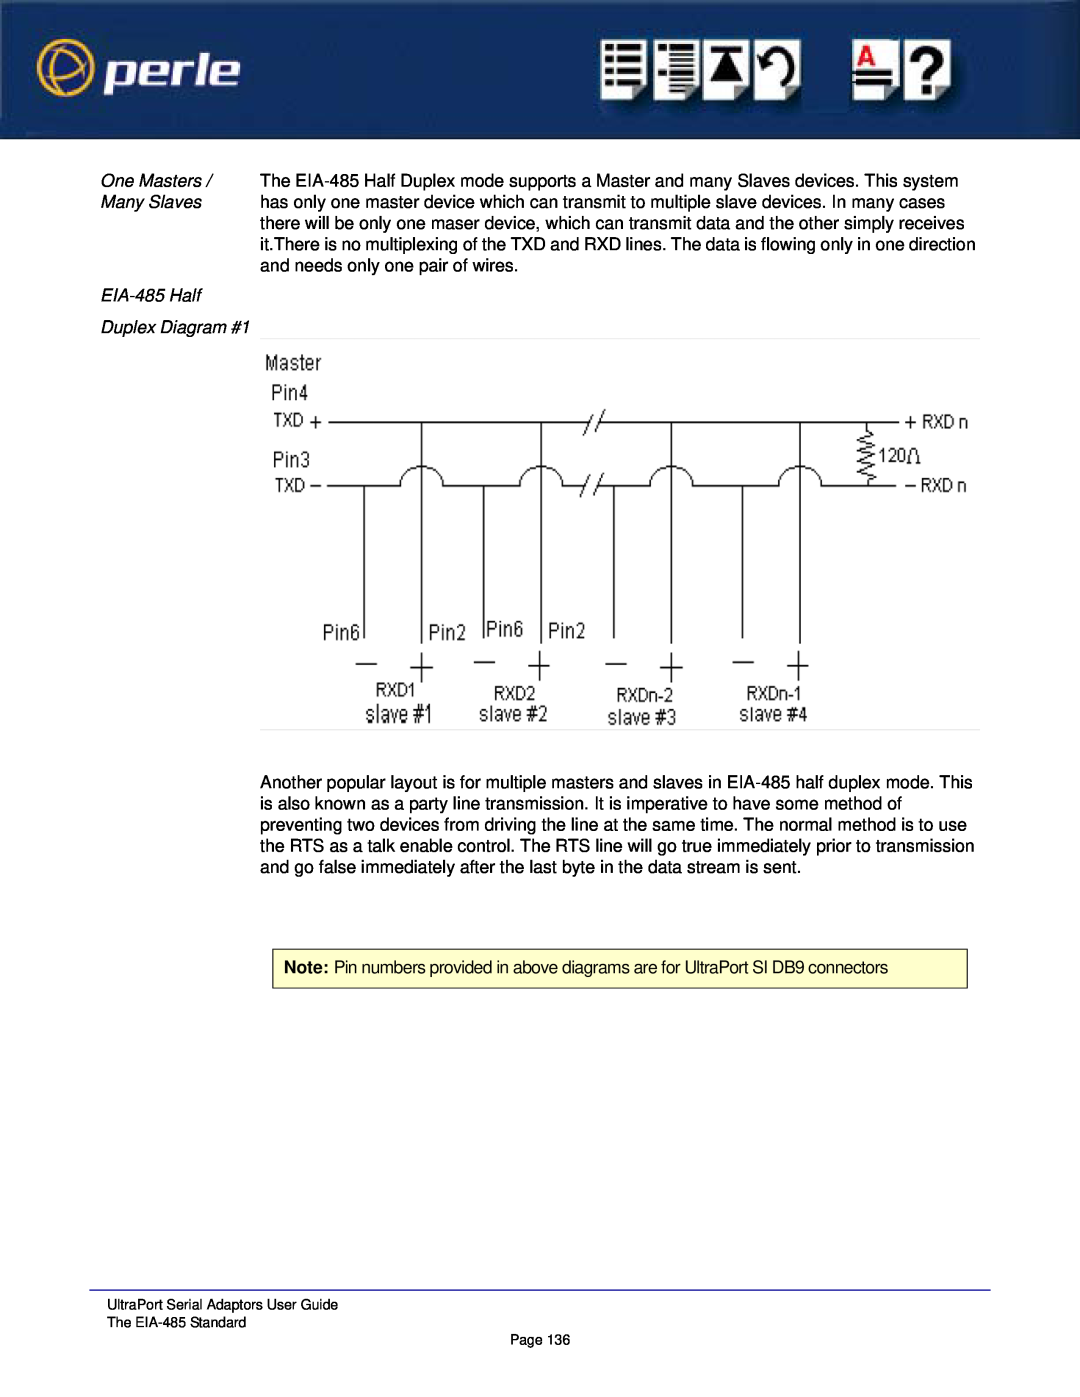 Perle Systems 5500152-23 manual EIA-485 Half Duplex Diagram #1 